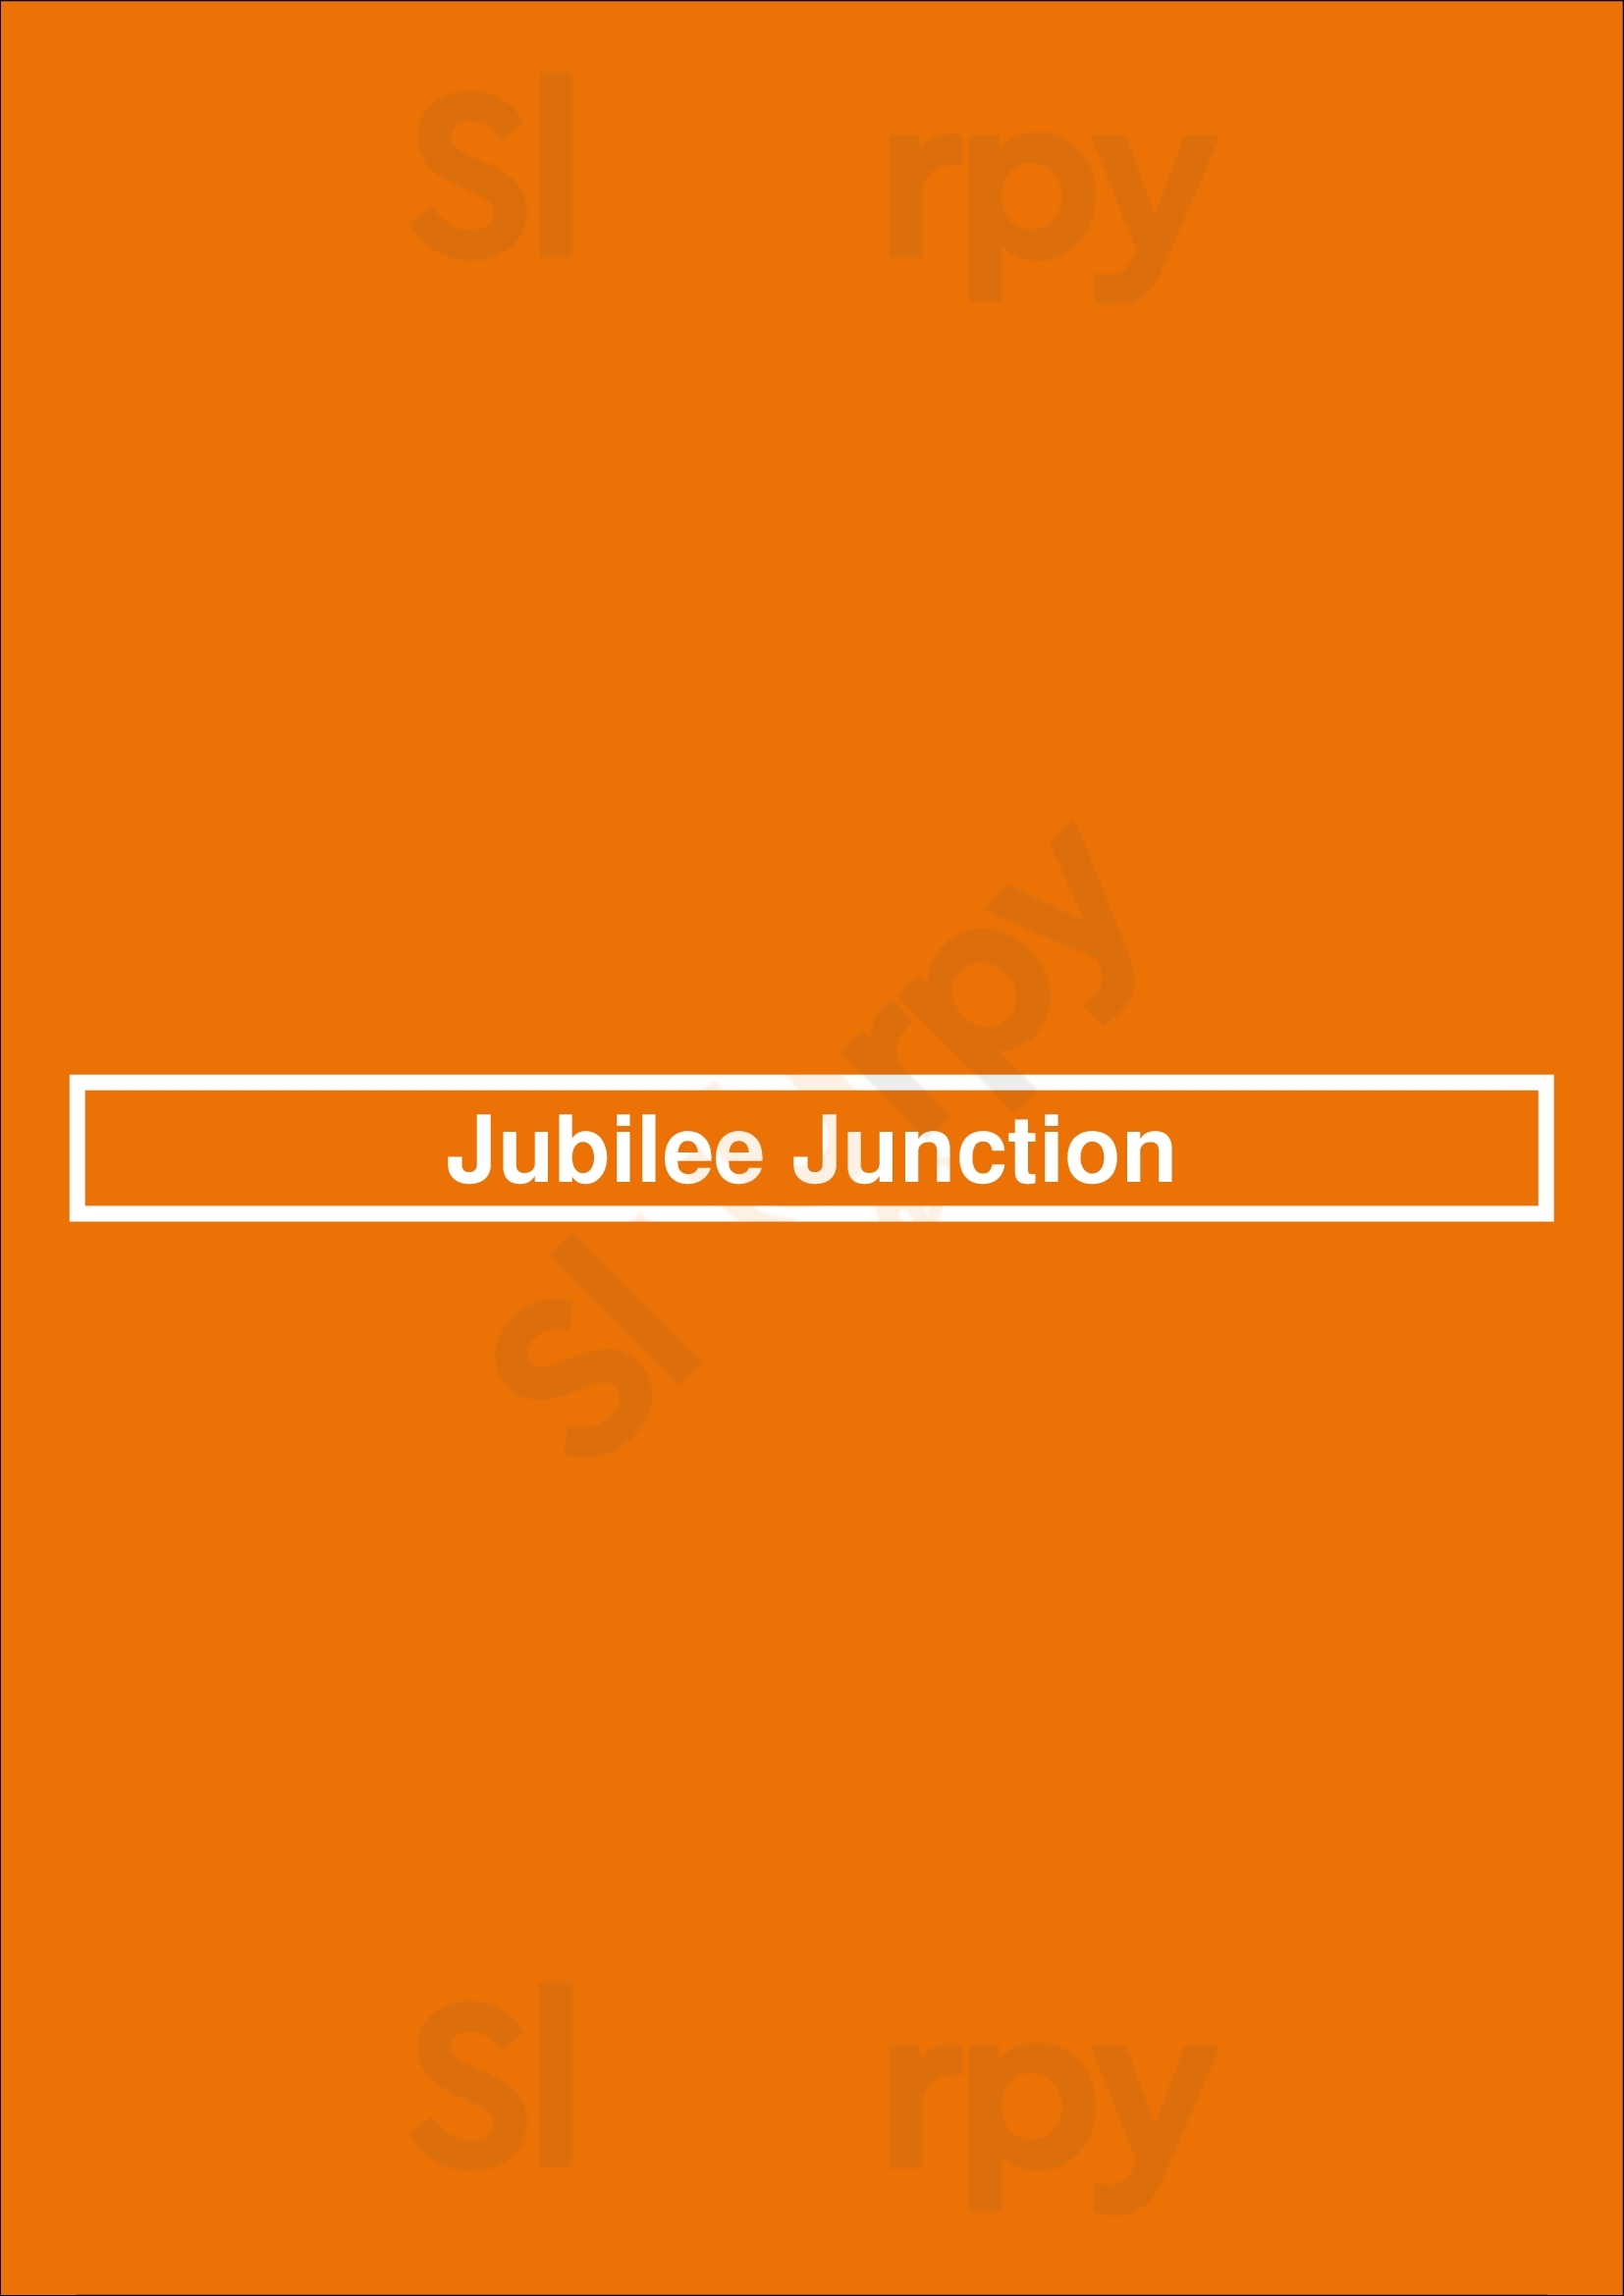 Jubilee Junction Halifax Menu - 1